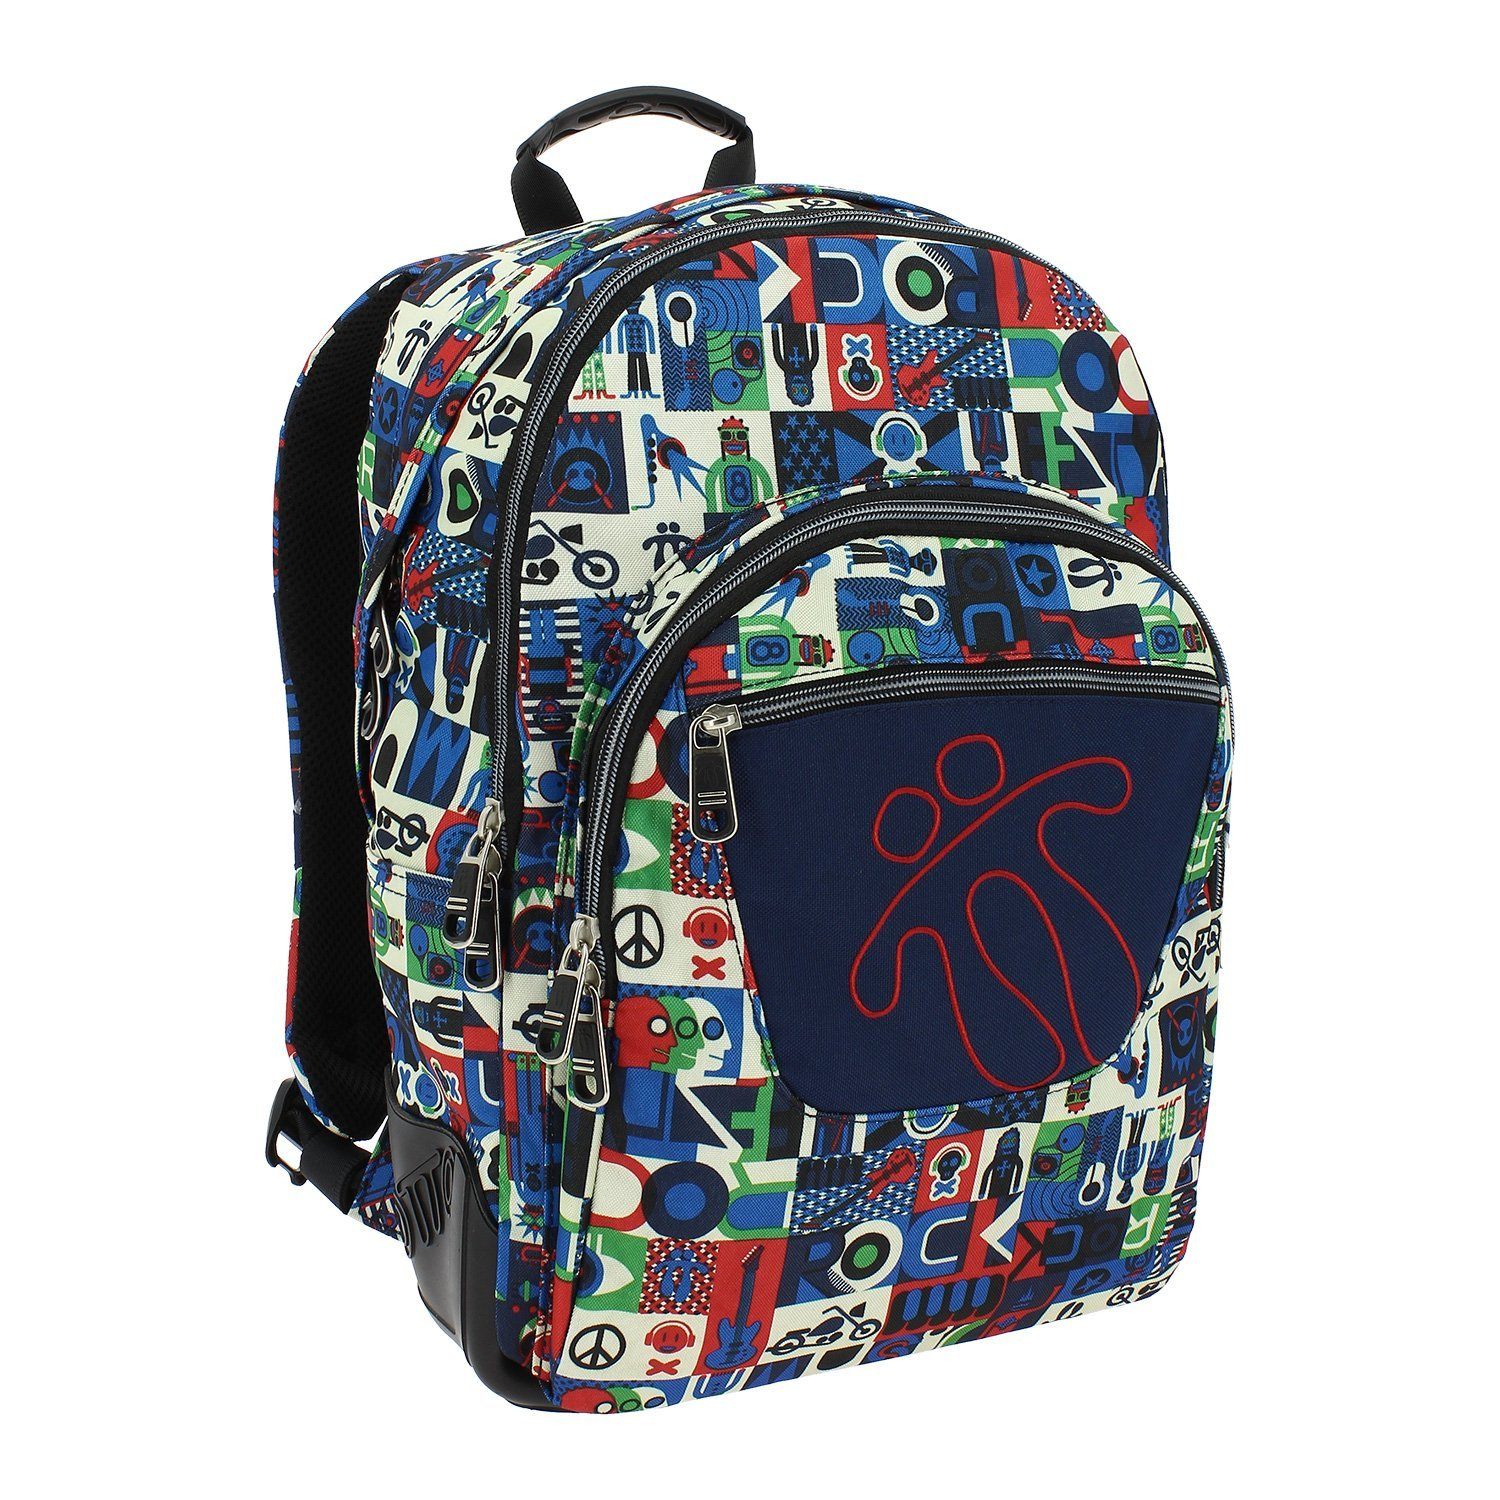 Totto Crayola Backpack 9UC Βιβλιοπωλείο Γνώση